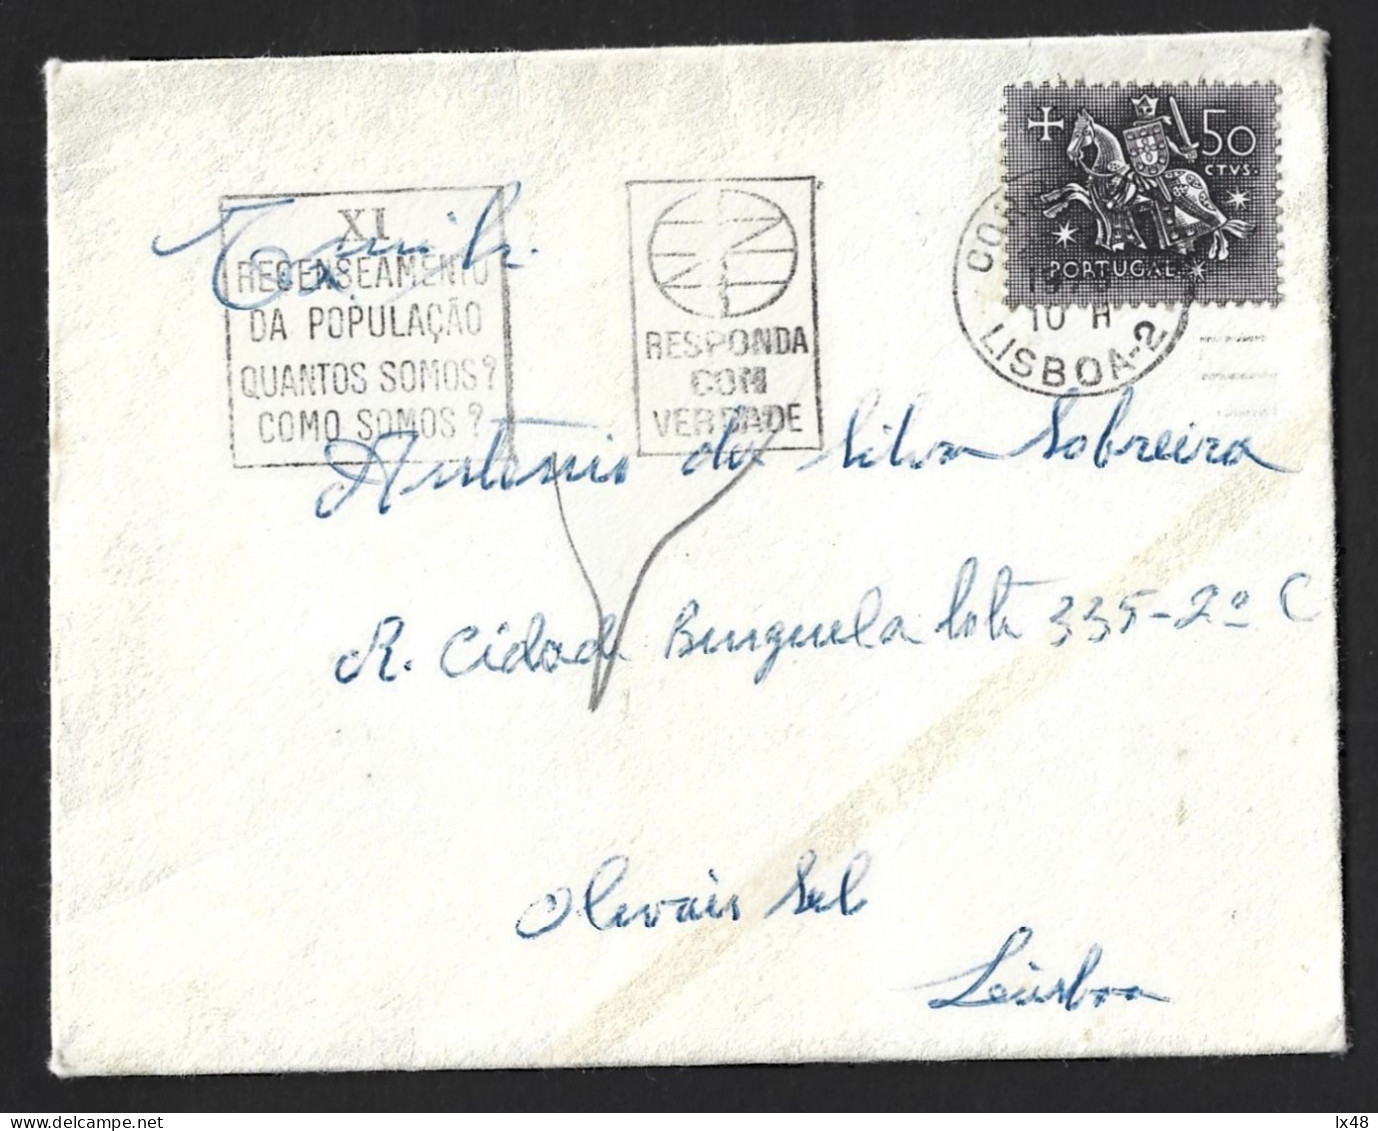 Último Recenseamento Eleitoral De Salazar 1970. Flâmula IX Recenseamento Do Estado Novo, Portugal. Salazar's Last Electo - Covers & Documents